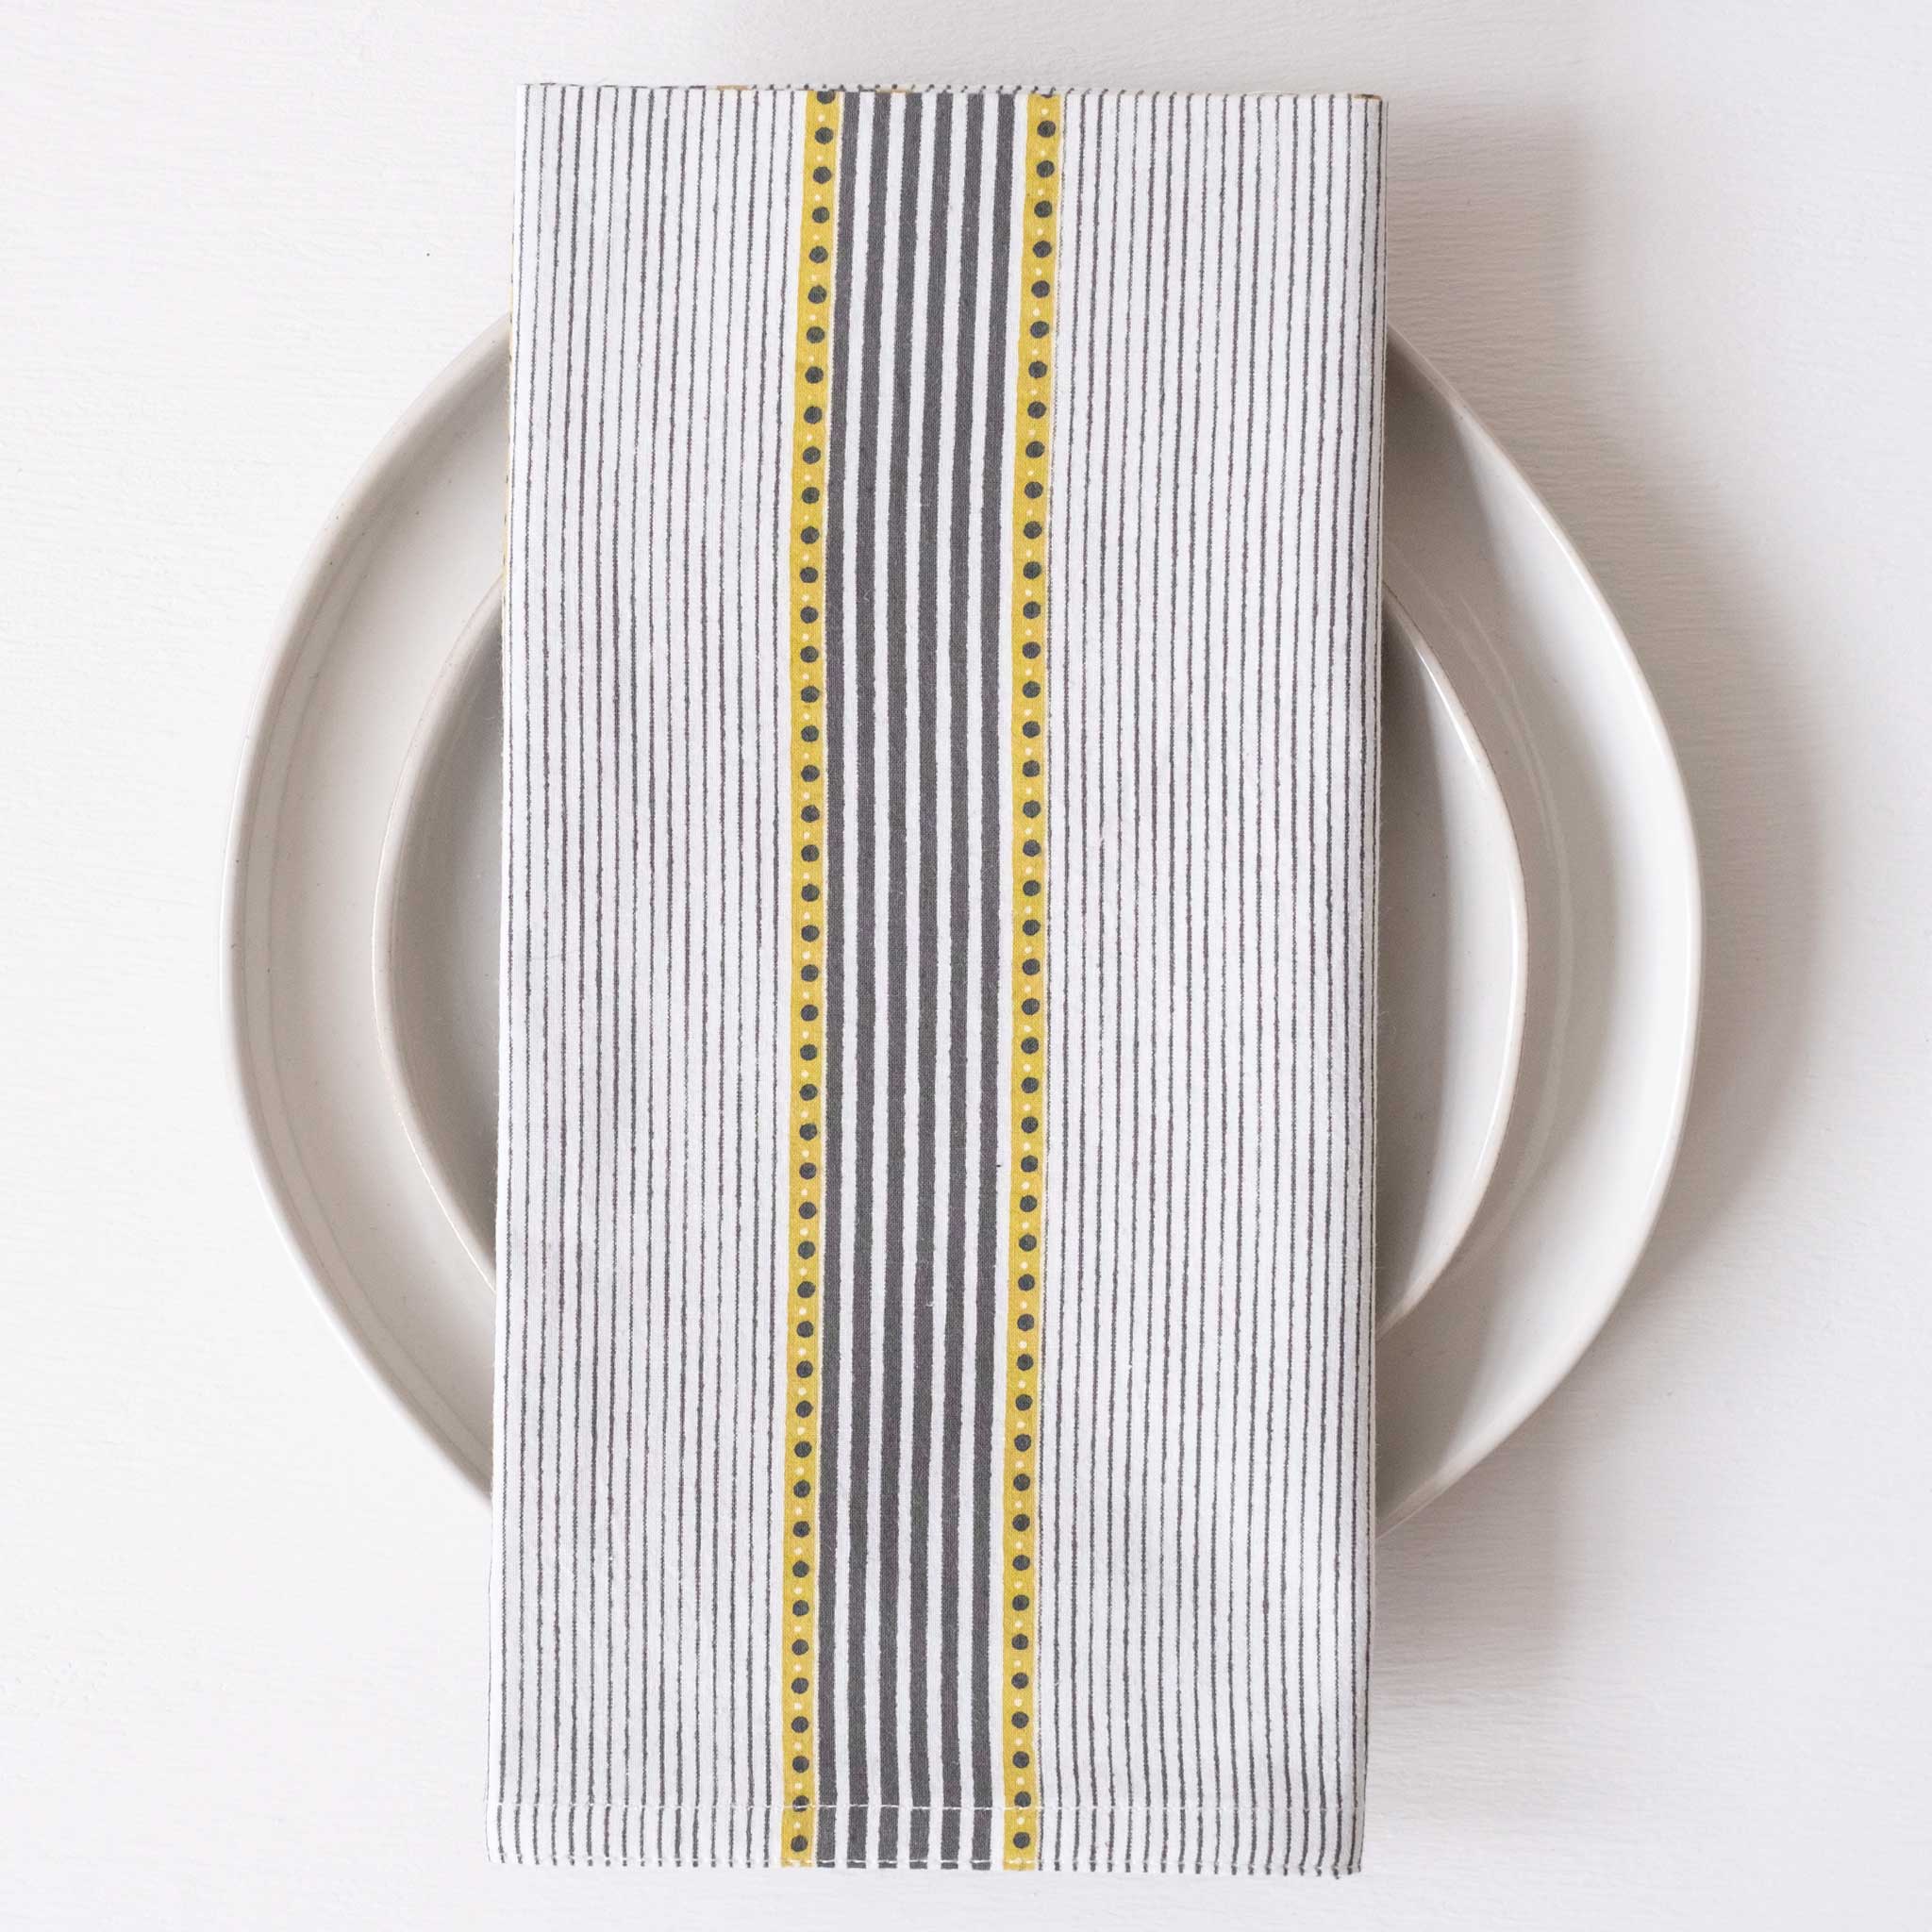 Trilot Stripes Olive Block Printed Napkins - set of 4